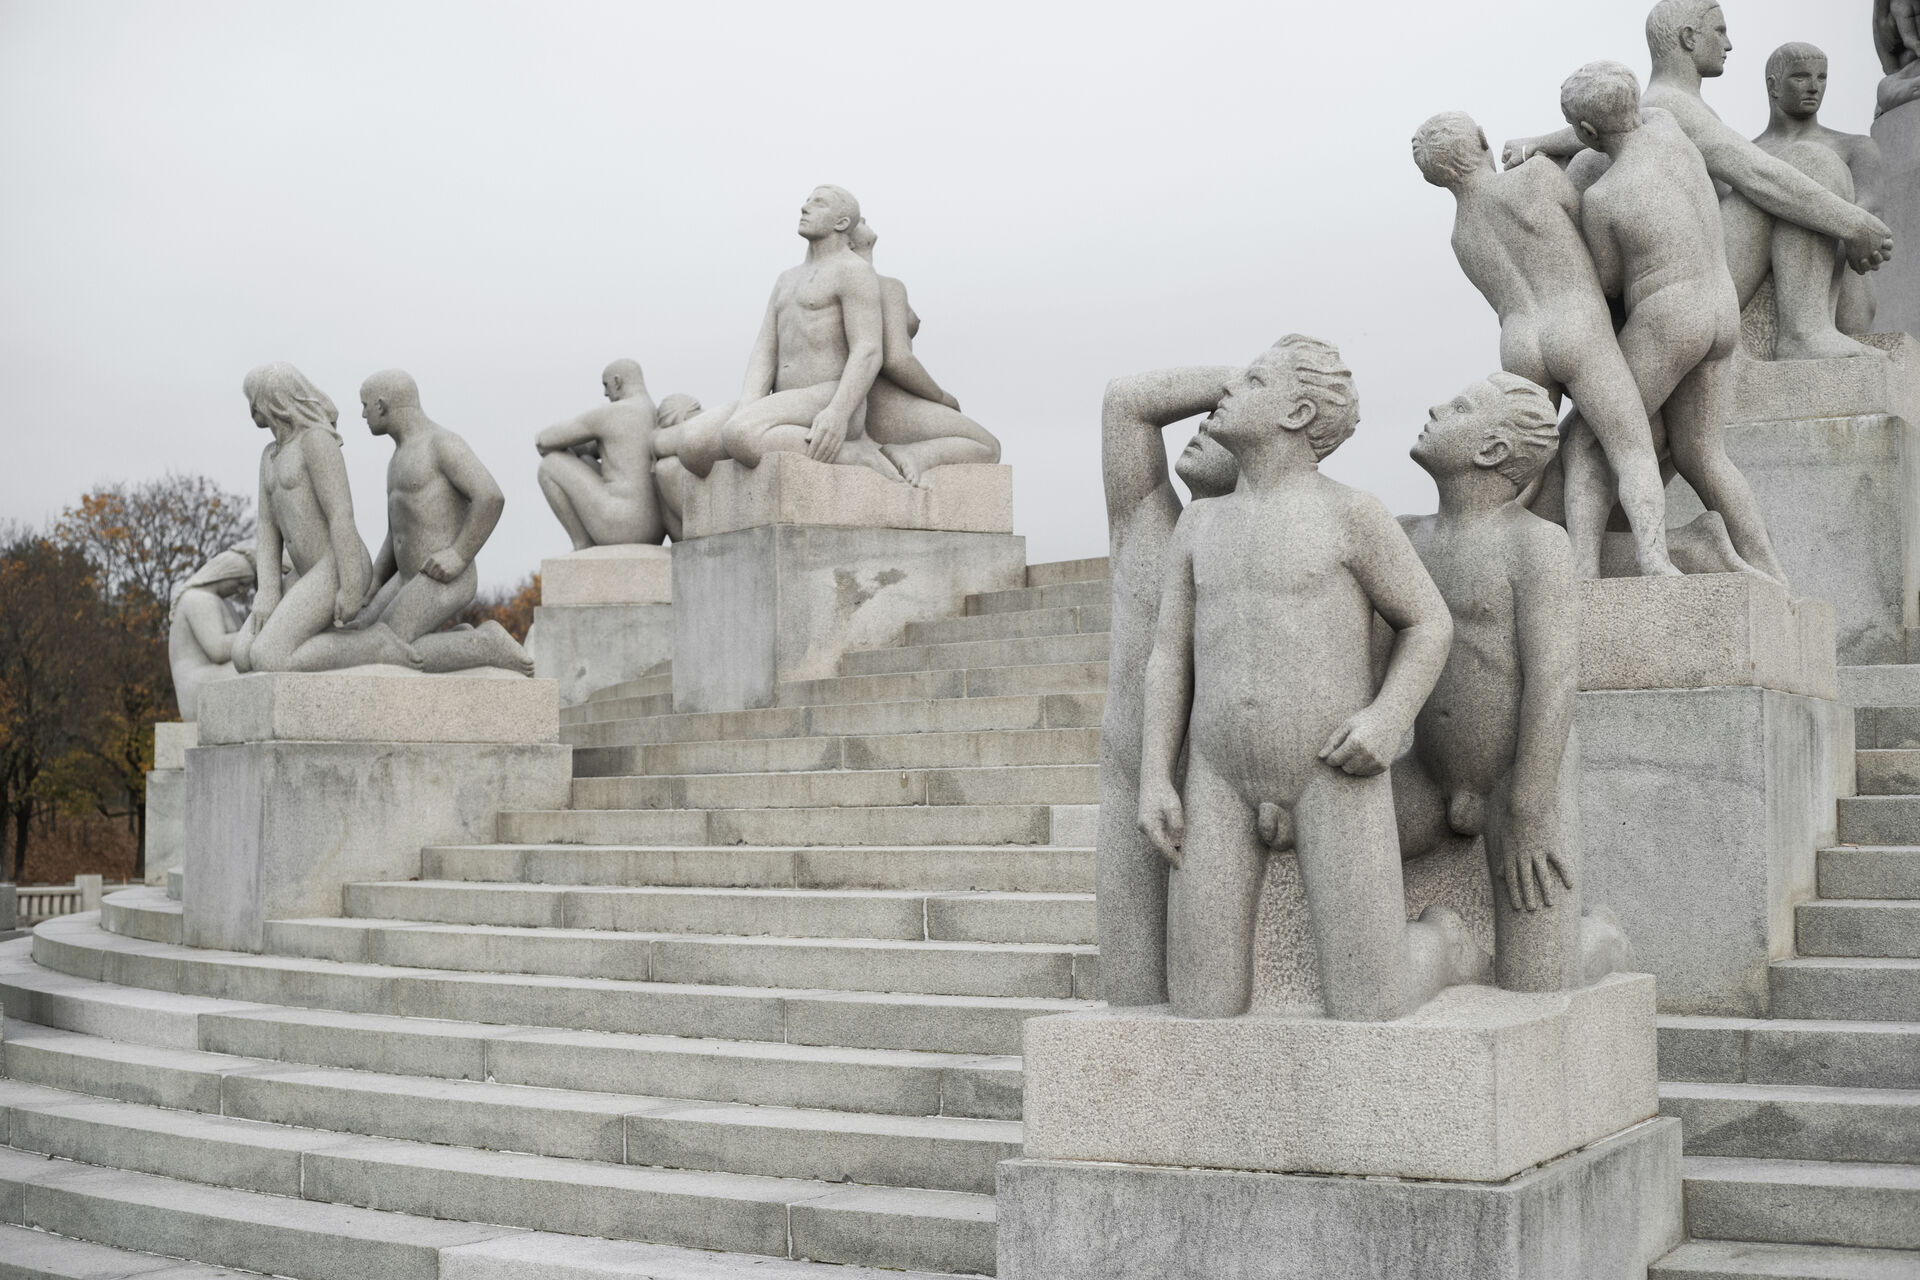 Skulpturer av mennesker som leker, hviler, tenker og observerer himmelen.